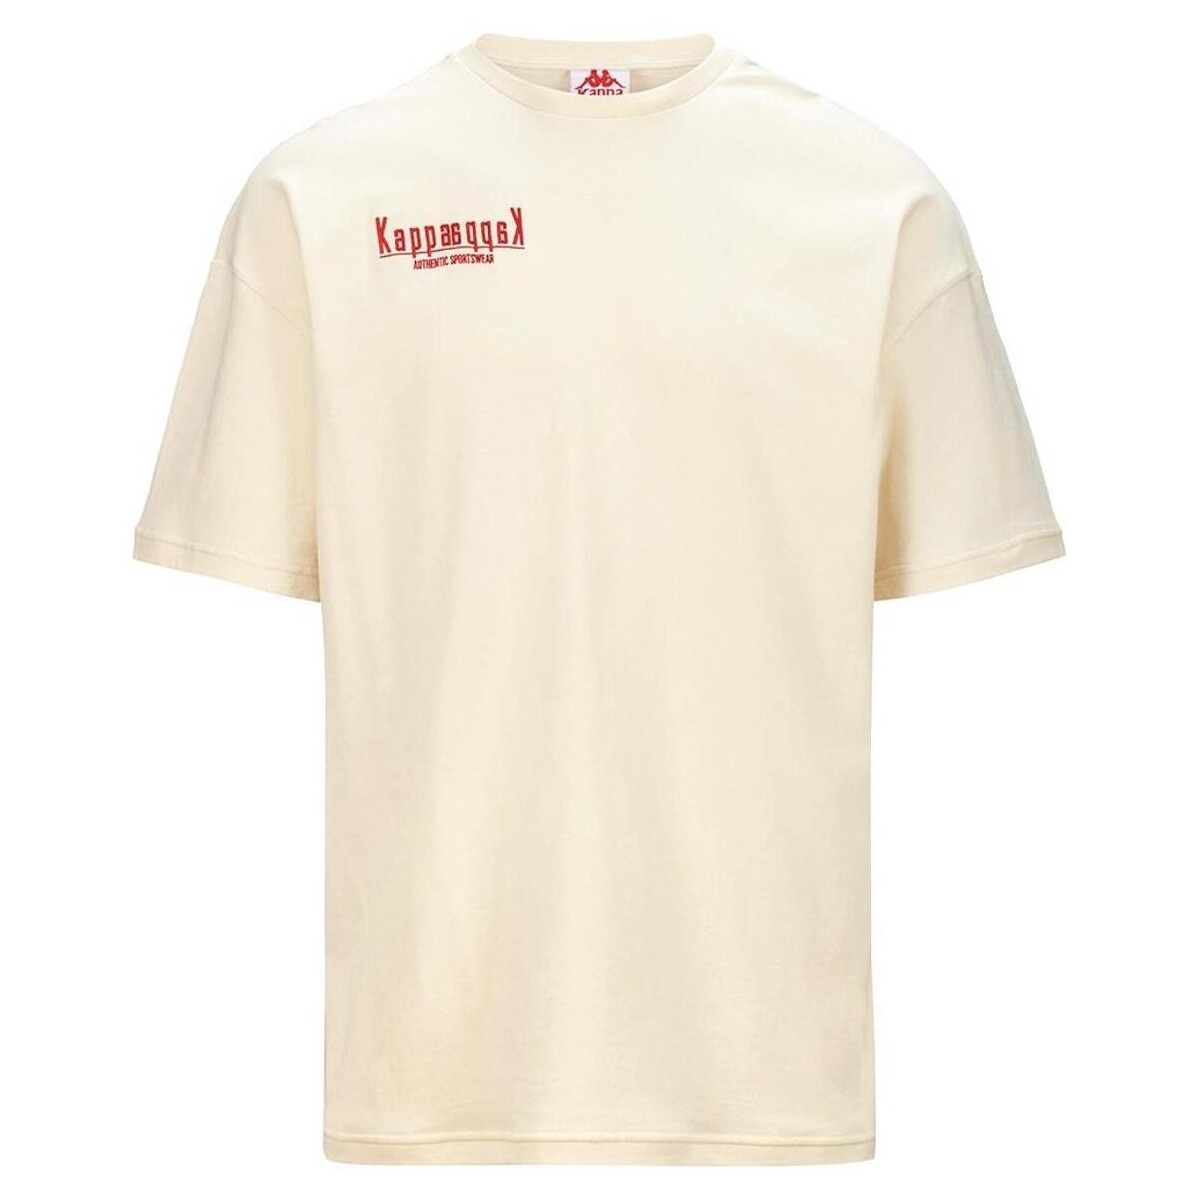 textil Camisetas manga corta Kappa LERICE HERITAGE Beige